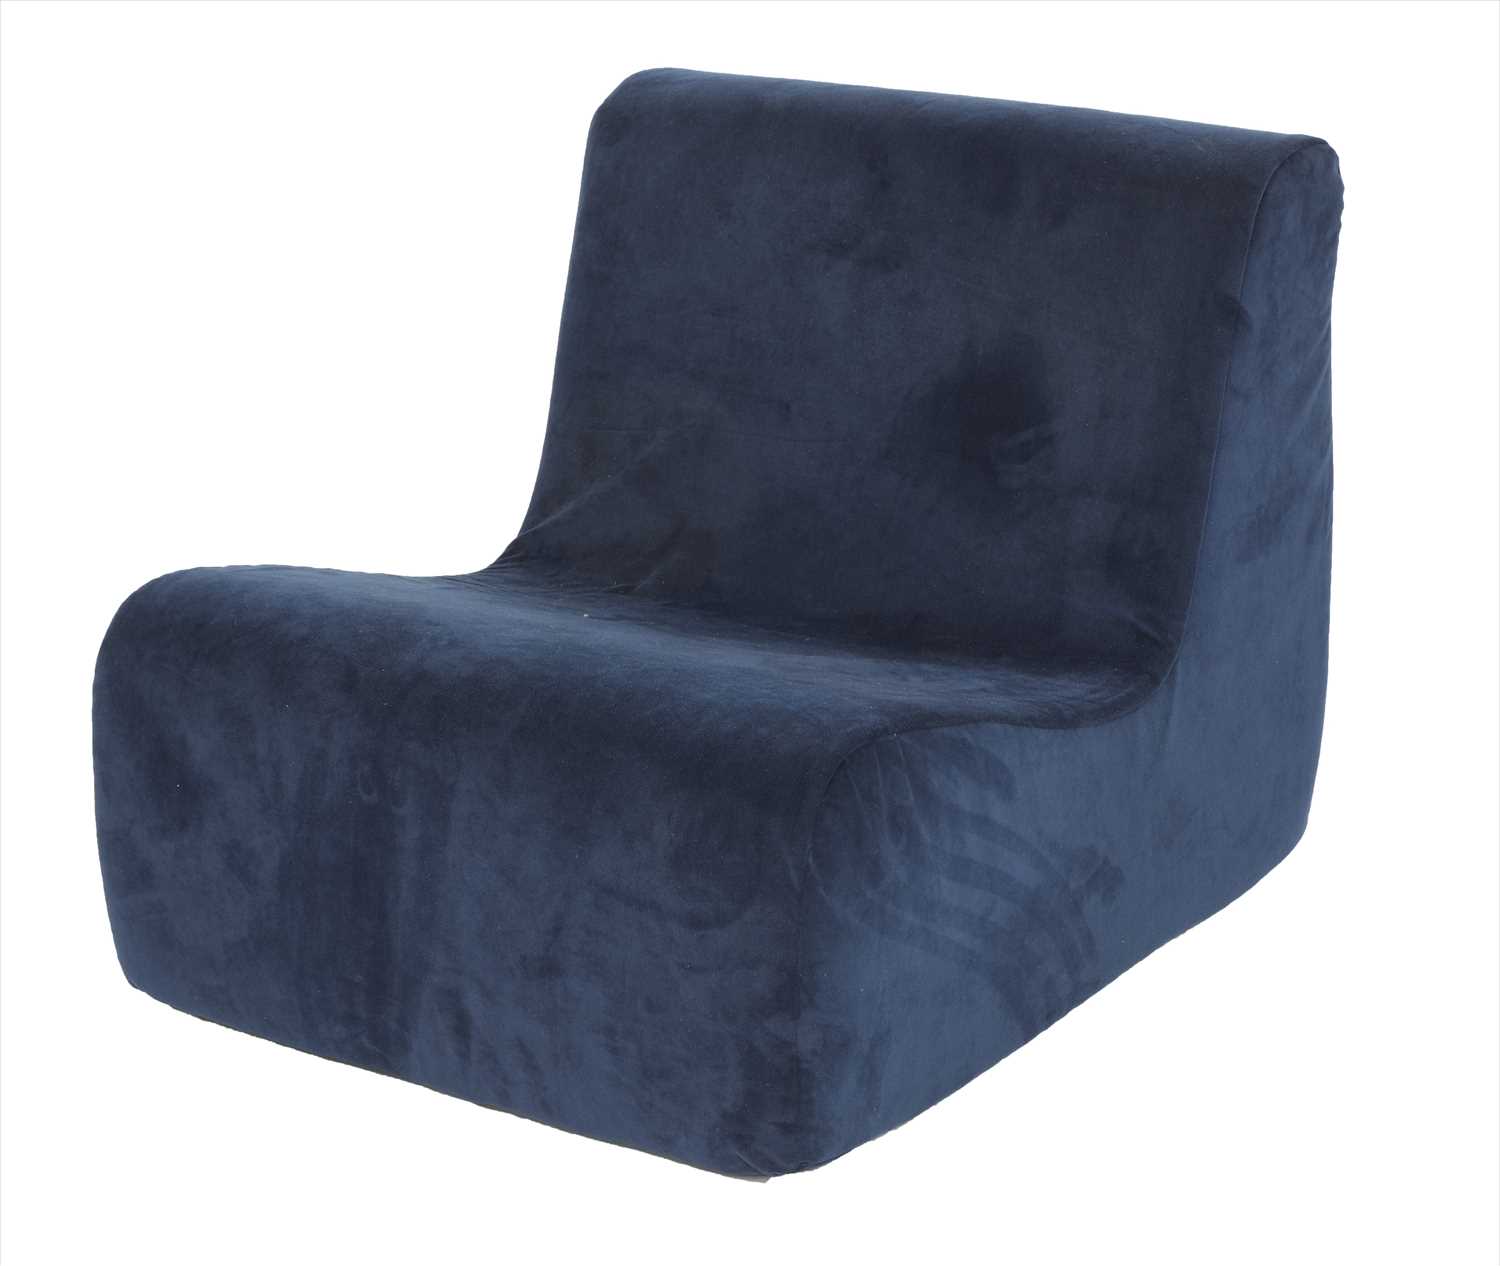 A blue velvet chair,